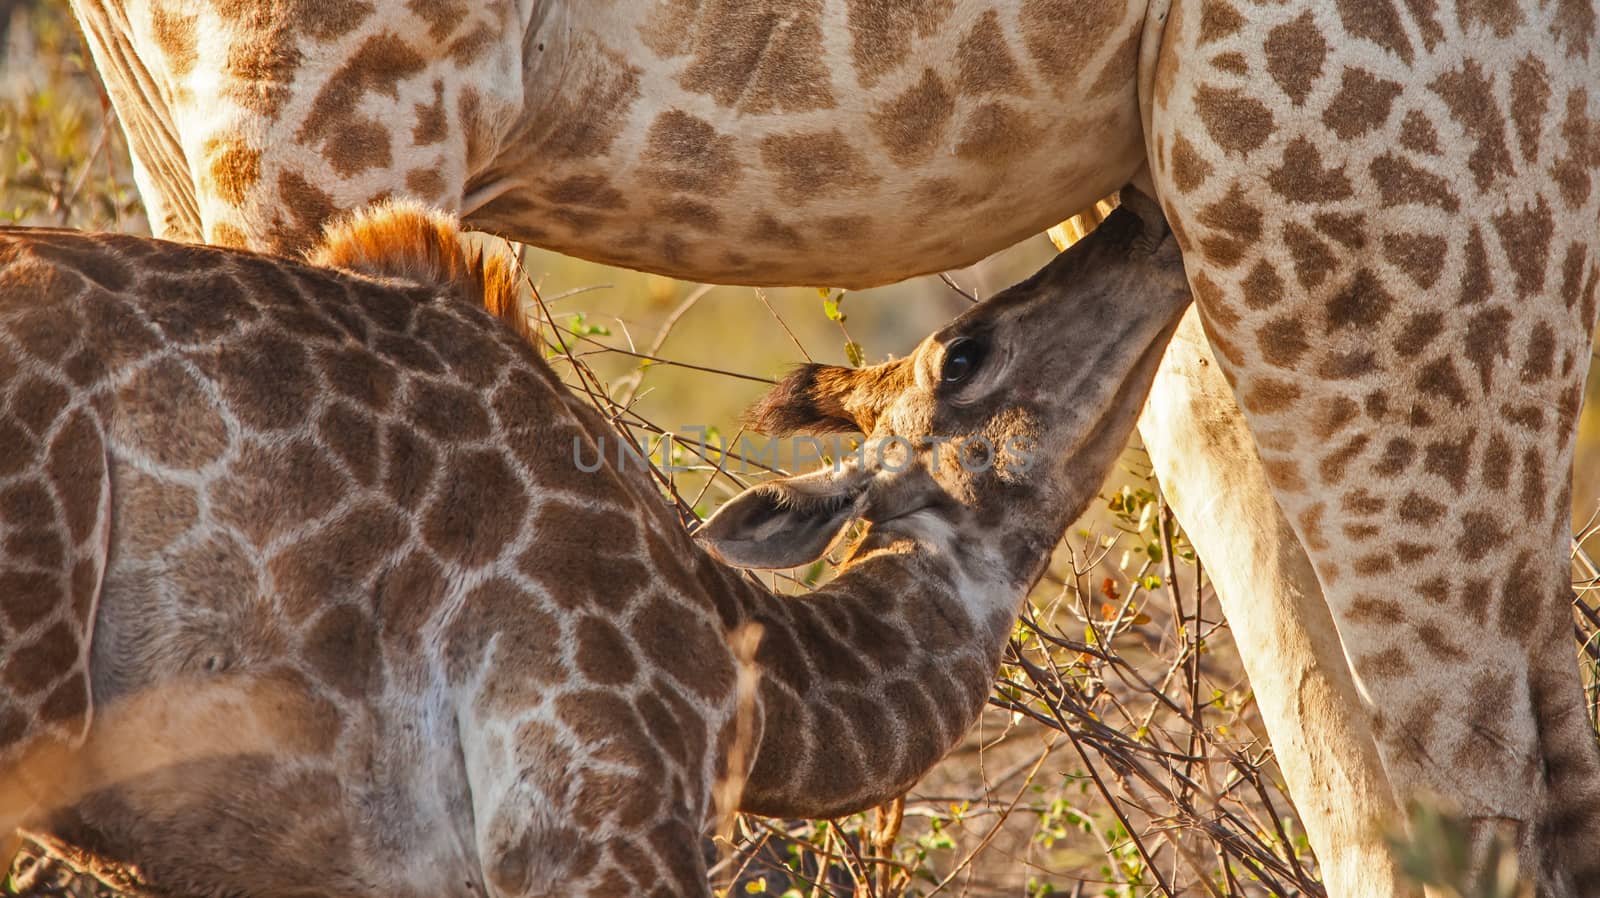 Suckling baby giraffe by kobus_peche